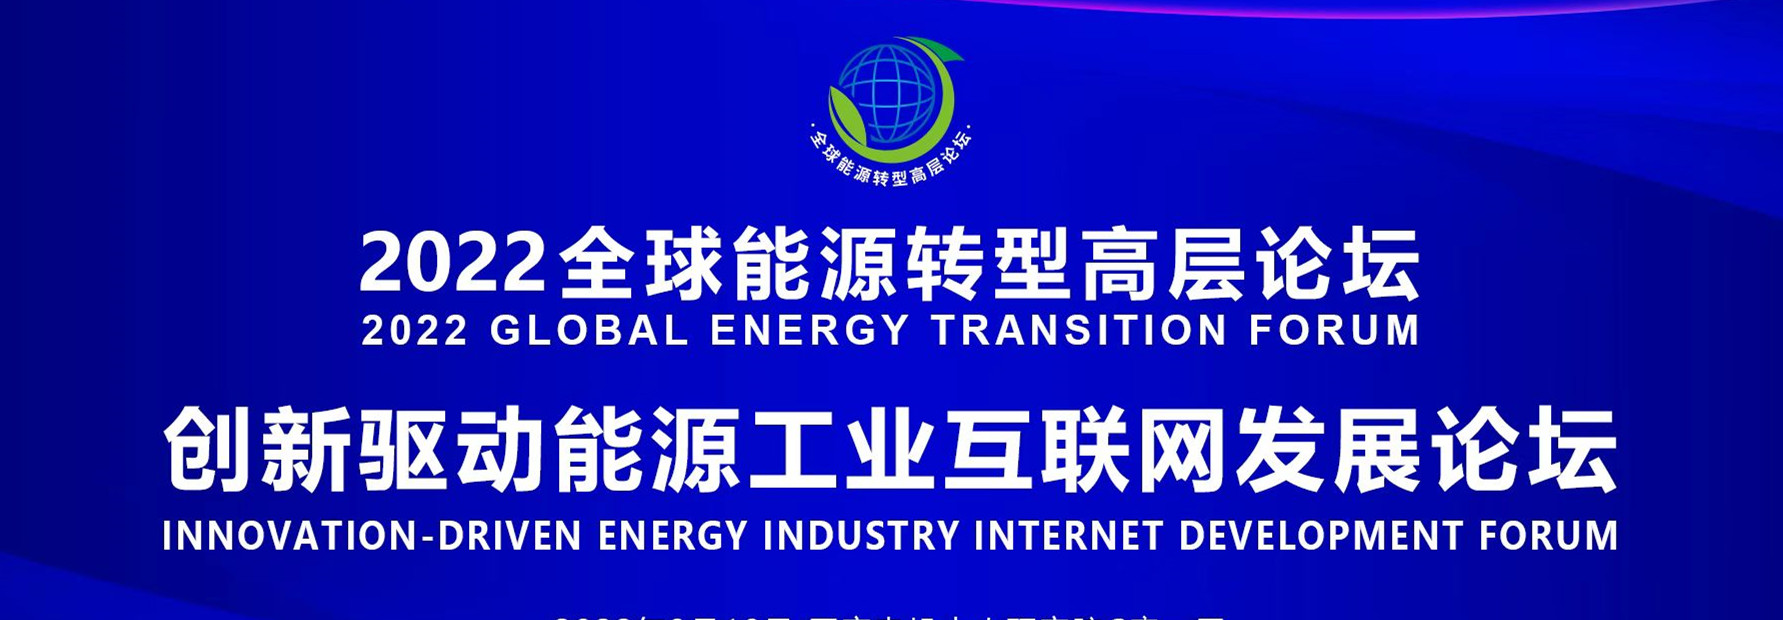 2022全球能源转型高层论坛分论坛创新驱动能源韩国三级视频互联网发展论坛在京能源工联院成功举办